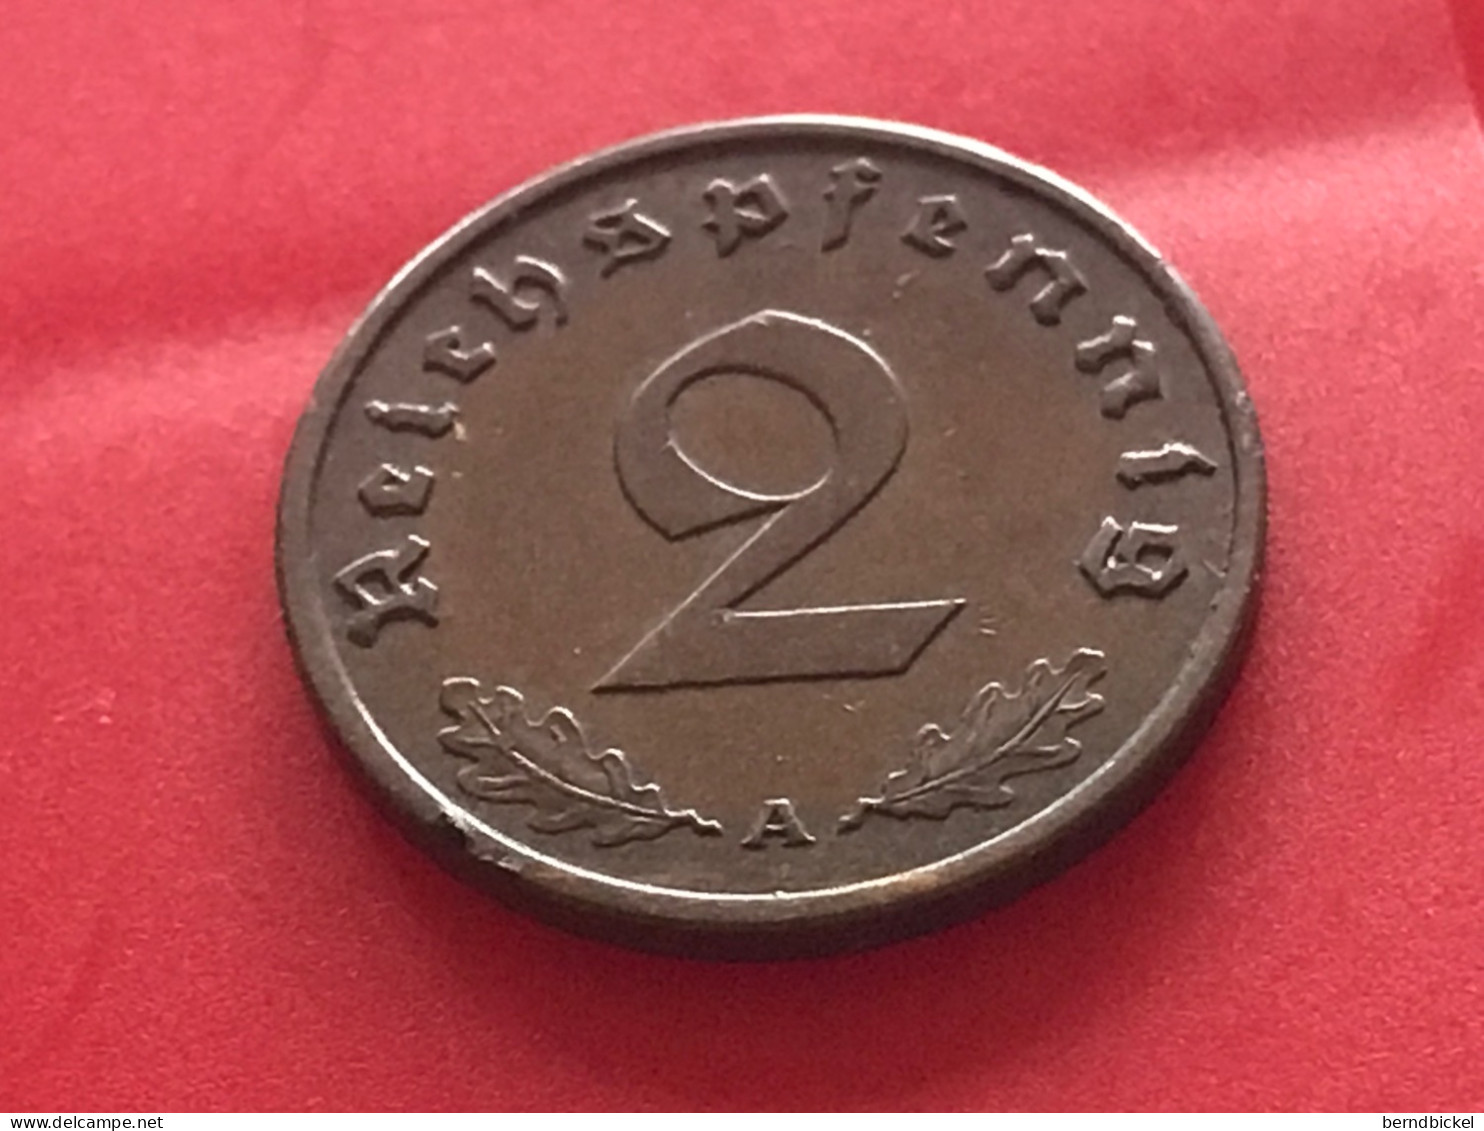 Münze Münzen Umlaufmünze Deutschland Deutsches Reich 2 Pfennig 1939 Münzzeichen A - 2 Reichspfennig